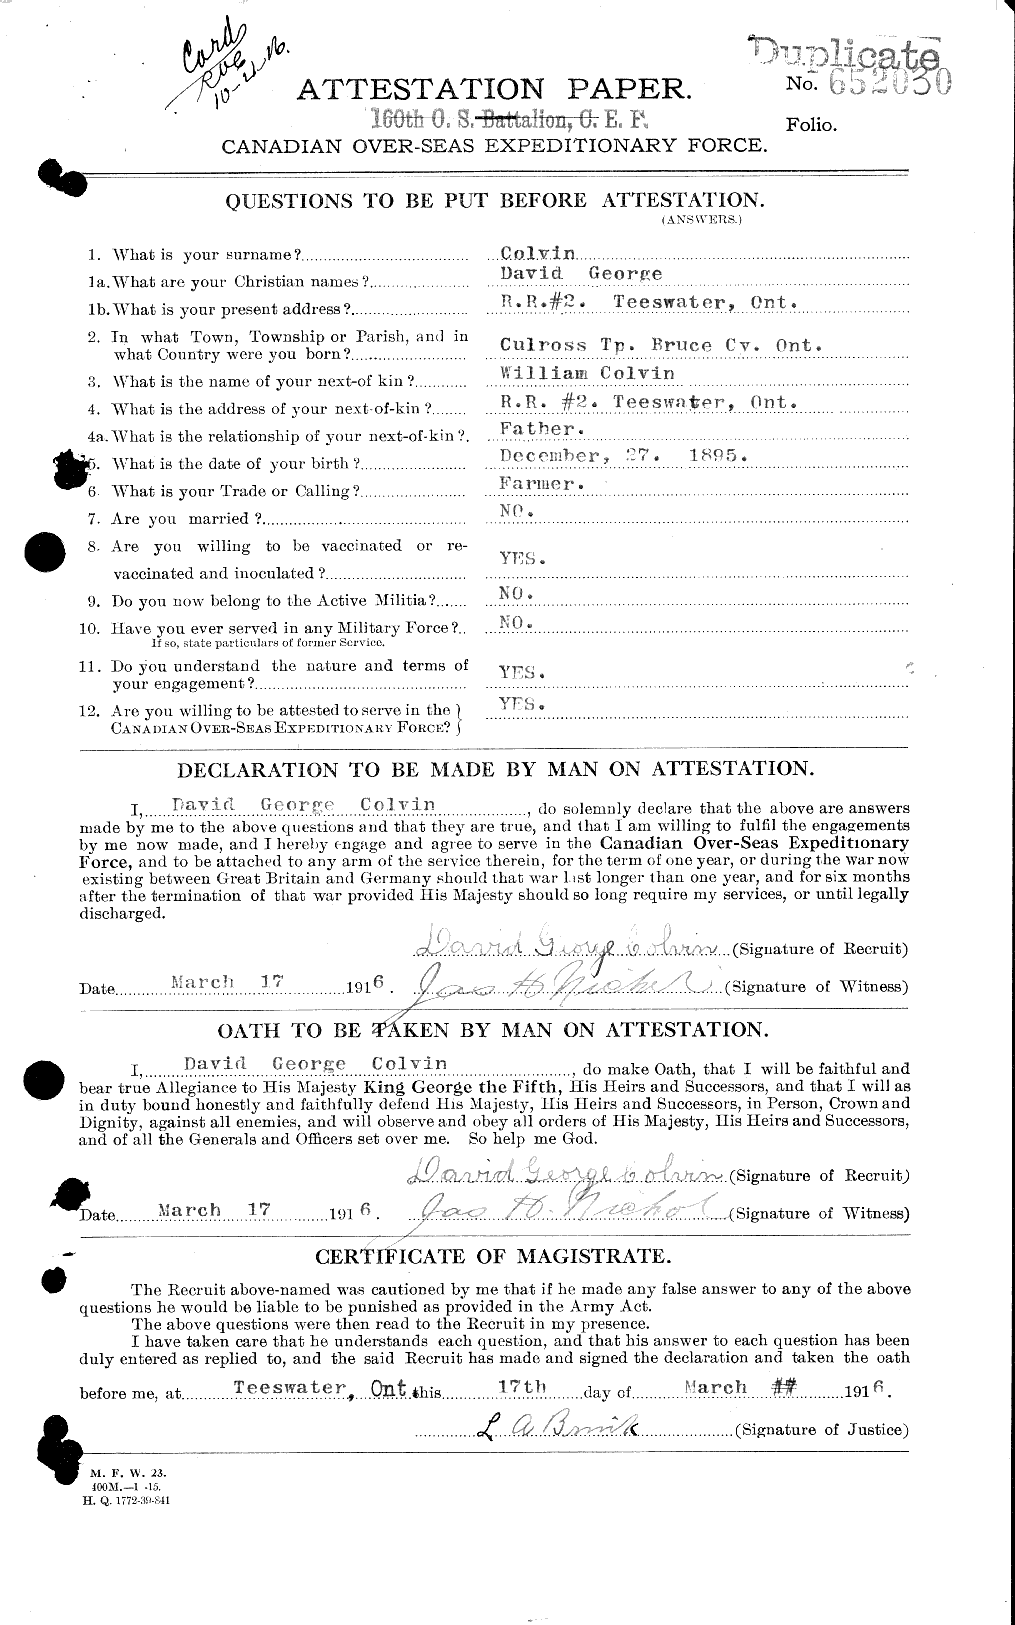 Dossiers du Personnel de la Première Guerre mondiale - CEC 042510a